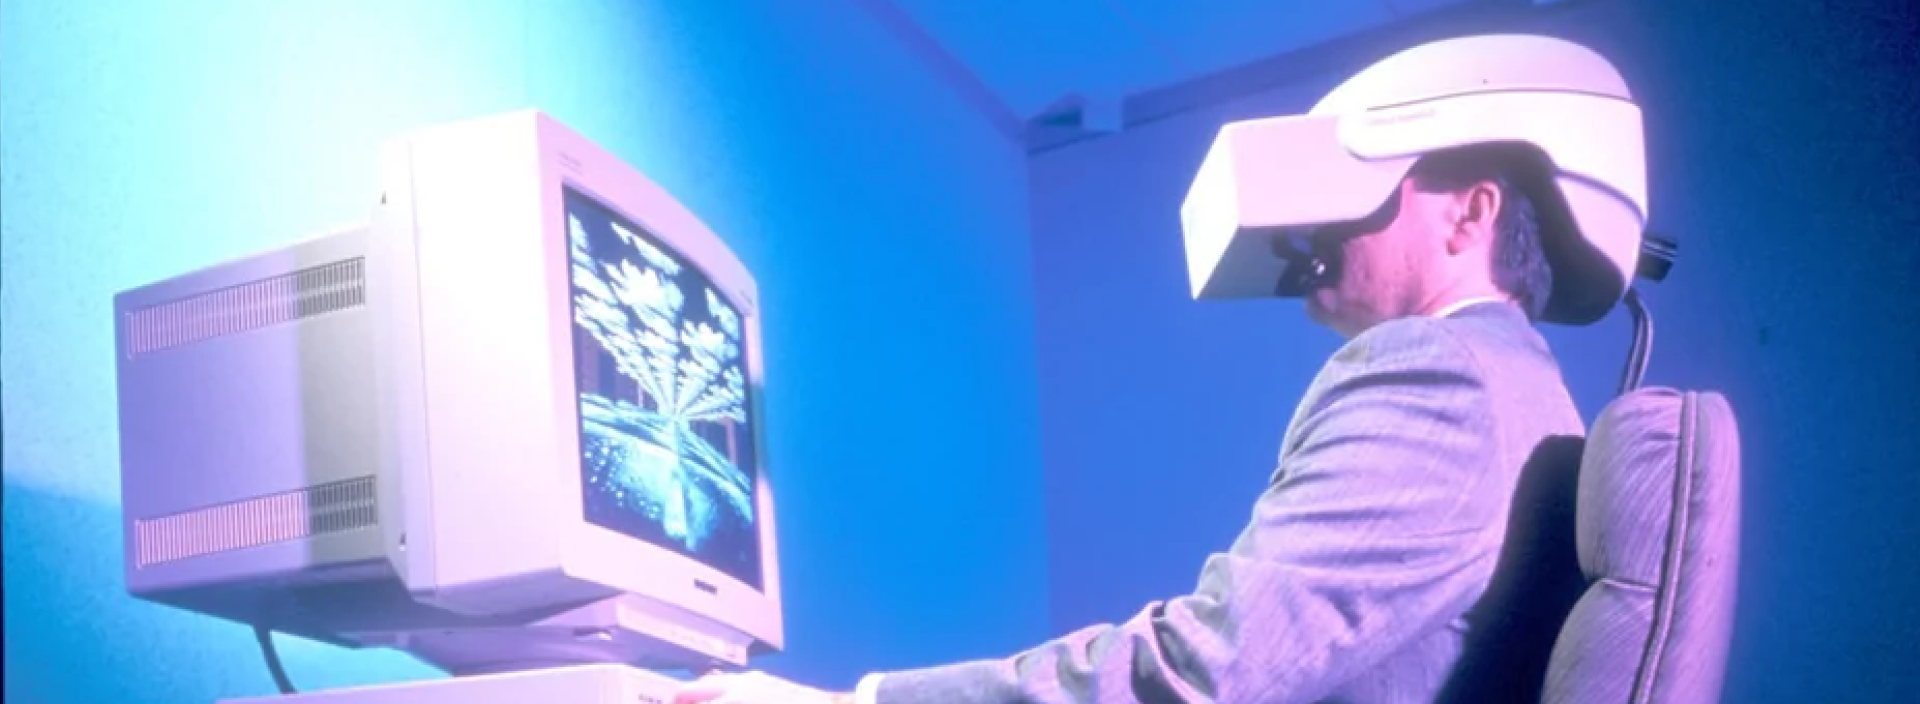 История виртуальной реальности | Разработка приложений VR и AR в Helmeton